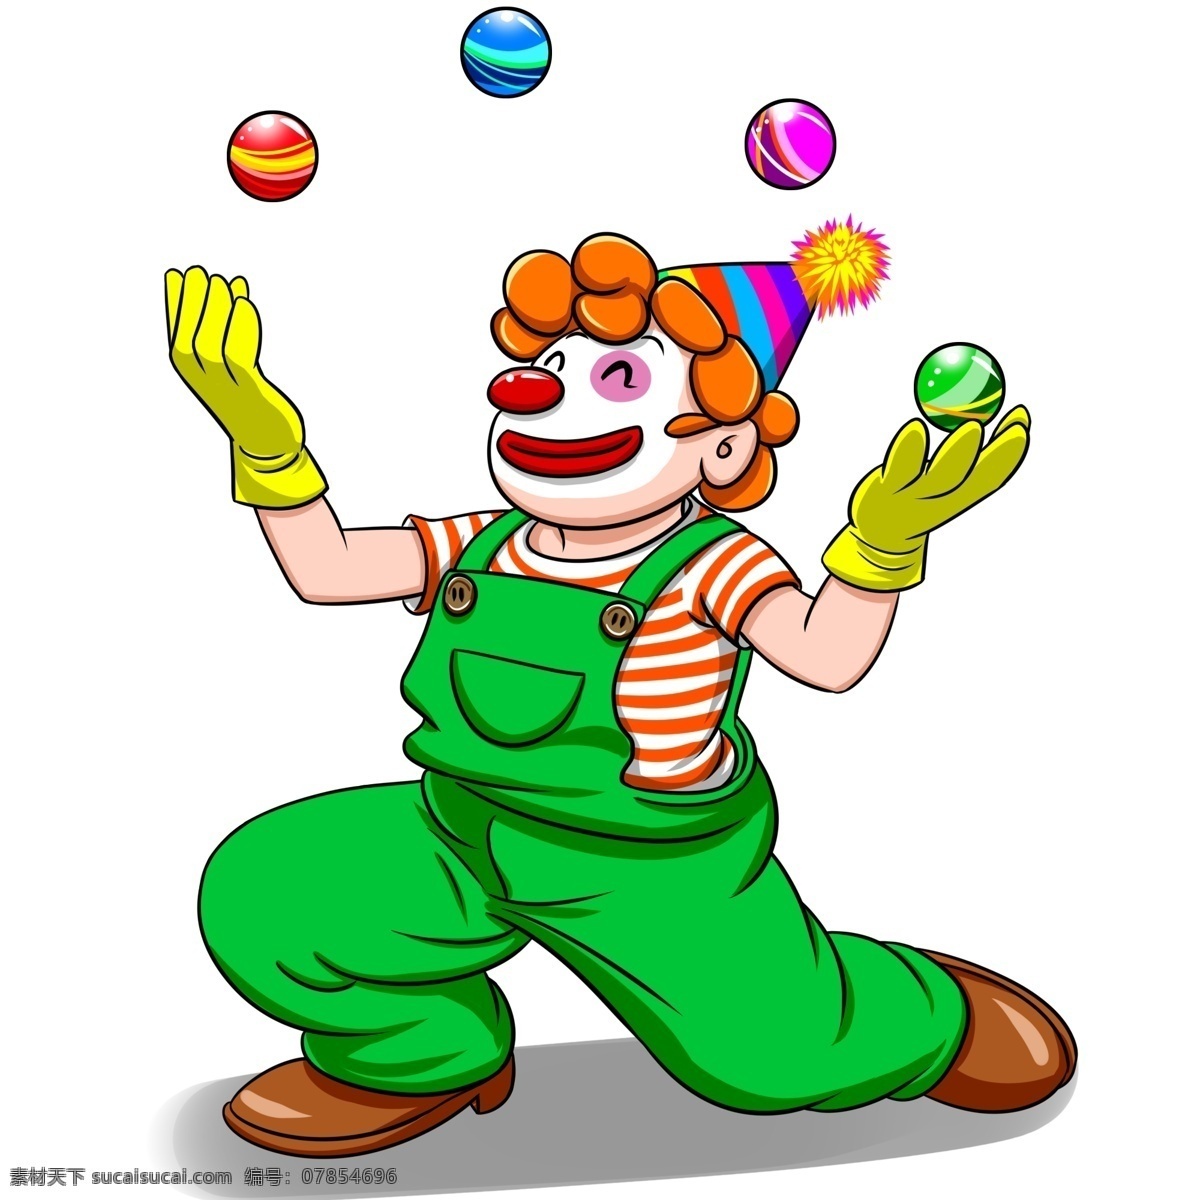 玩 小球 的卡 通 小丑 愚人节 商用 可商用 红鼻子 绿色 背带裤